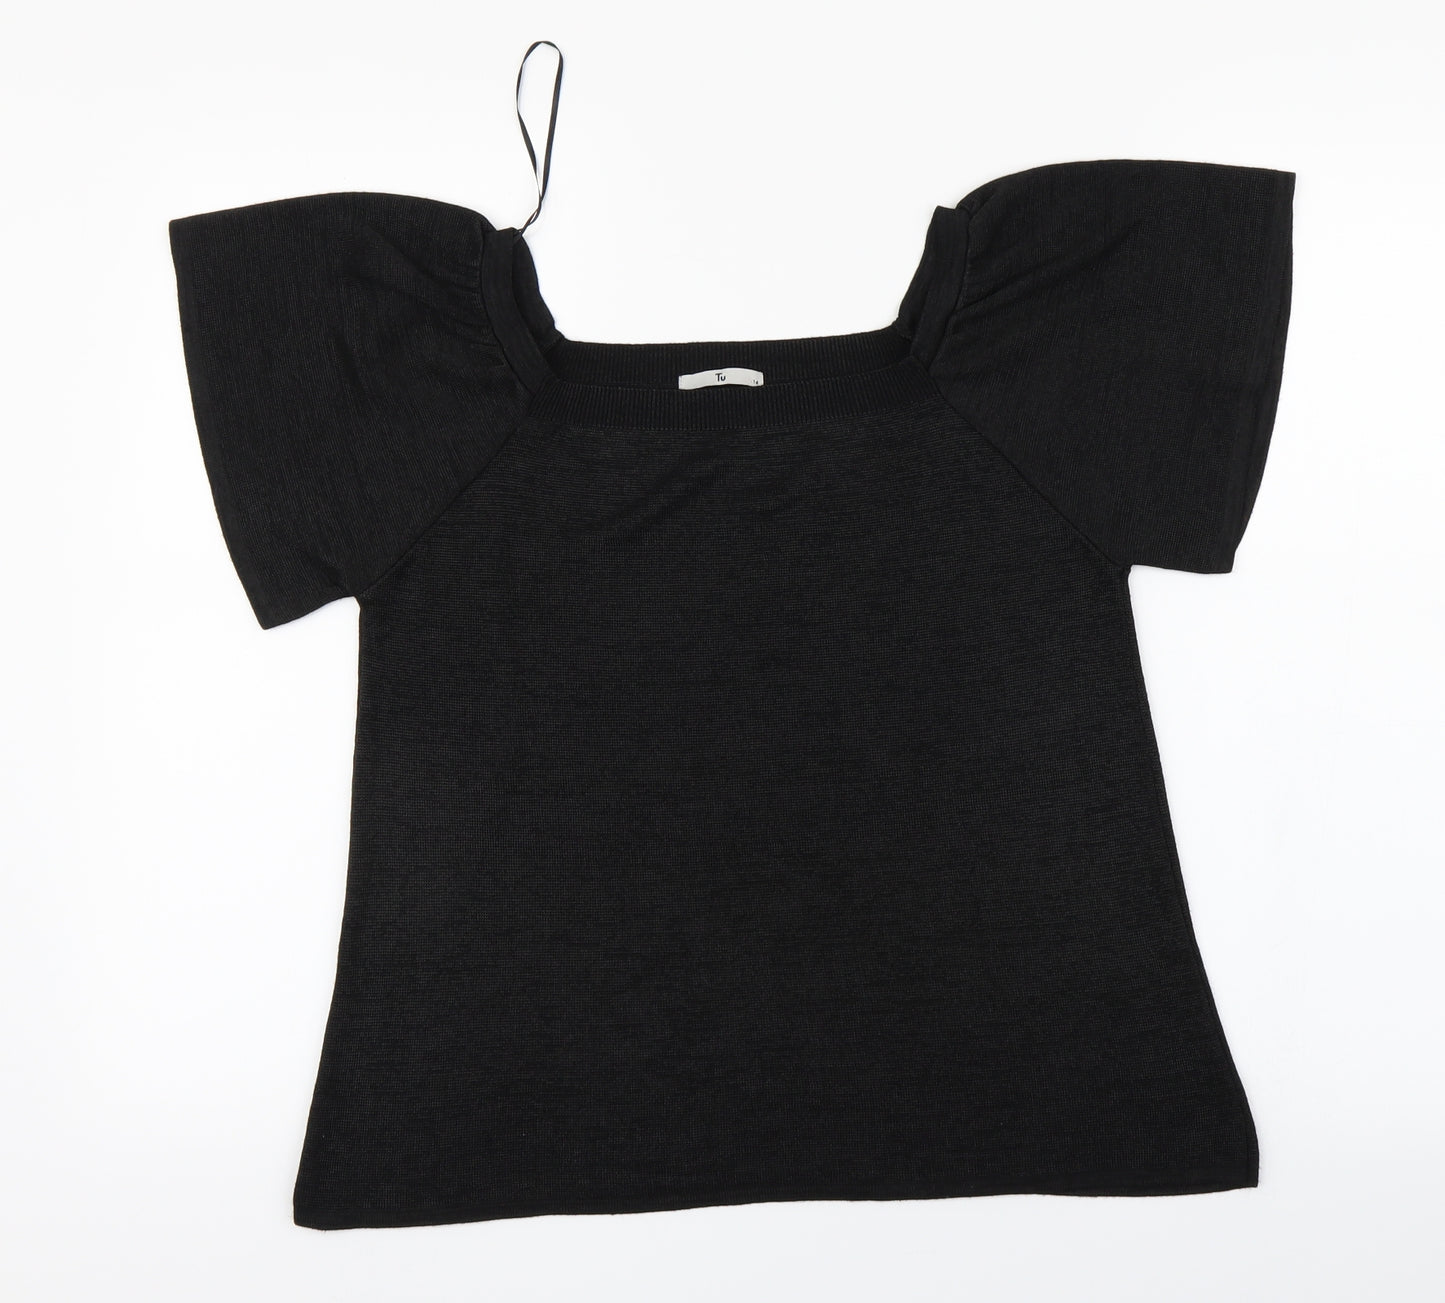 TU Womens Black   Basic T-Shirt Size 14  - Flare sleeve